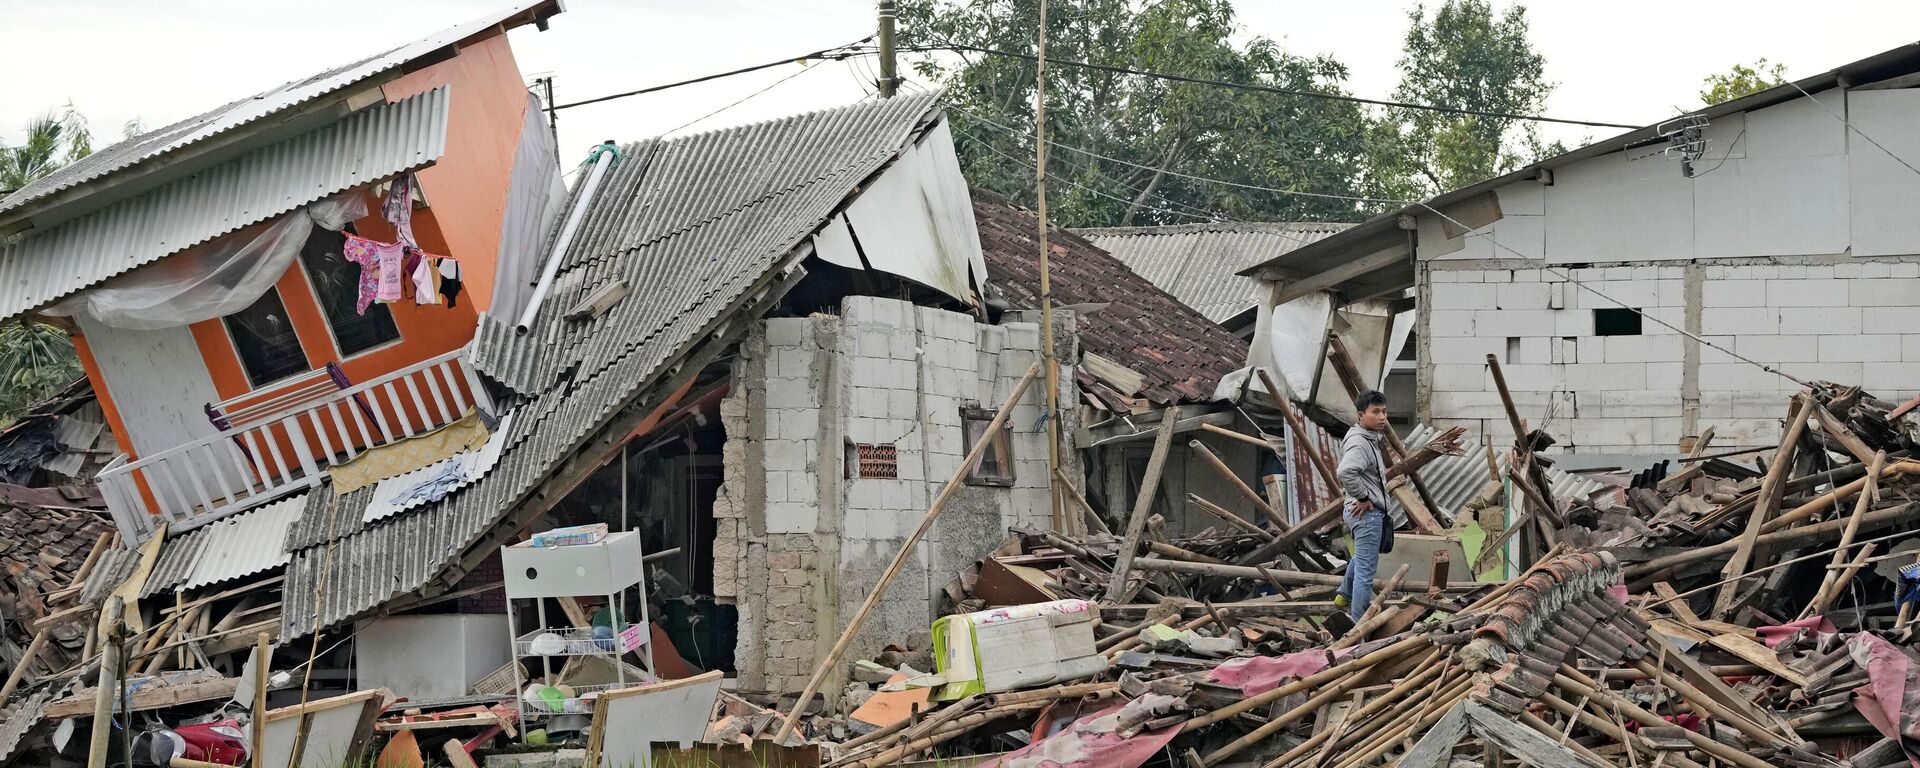 تداعيات زلزال بقوة 5.6 درجة أدى إلى مقتل ما لا يقل عن 162 شخصًا وإصابة المئات وفقد آخرين في سيانجور، إندونيسيا في 22 نوفمبر 2022. - سبوتنيك عربي, 1920, 24.05.2023